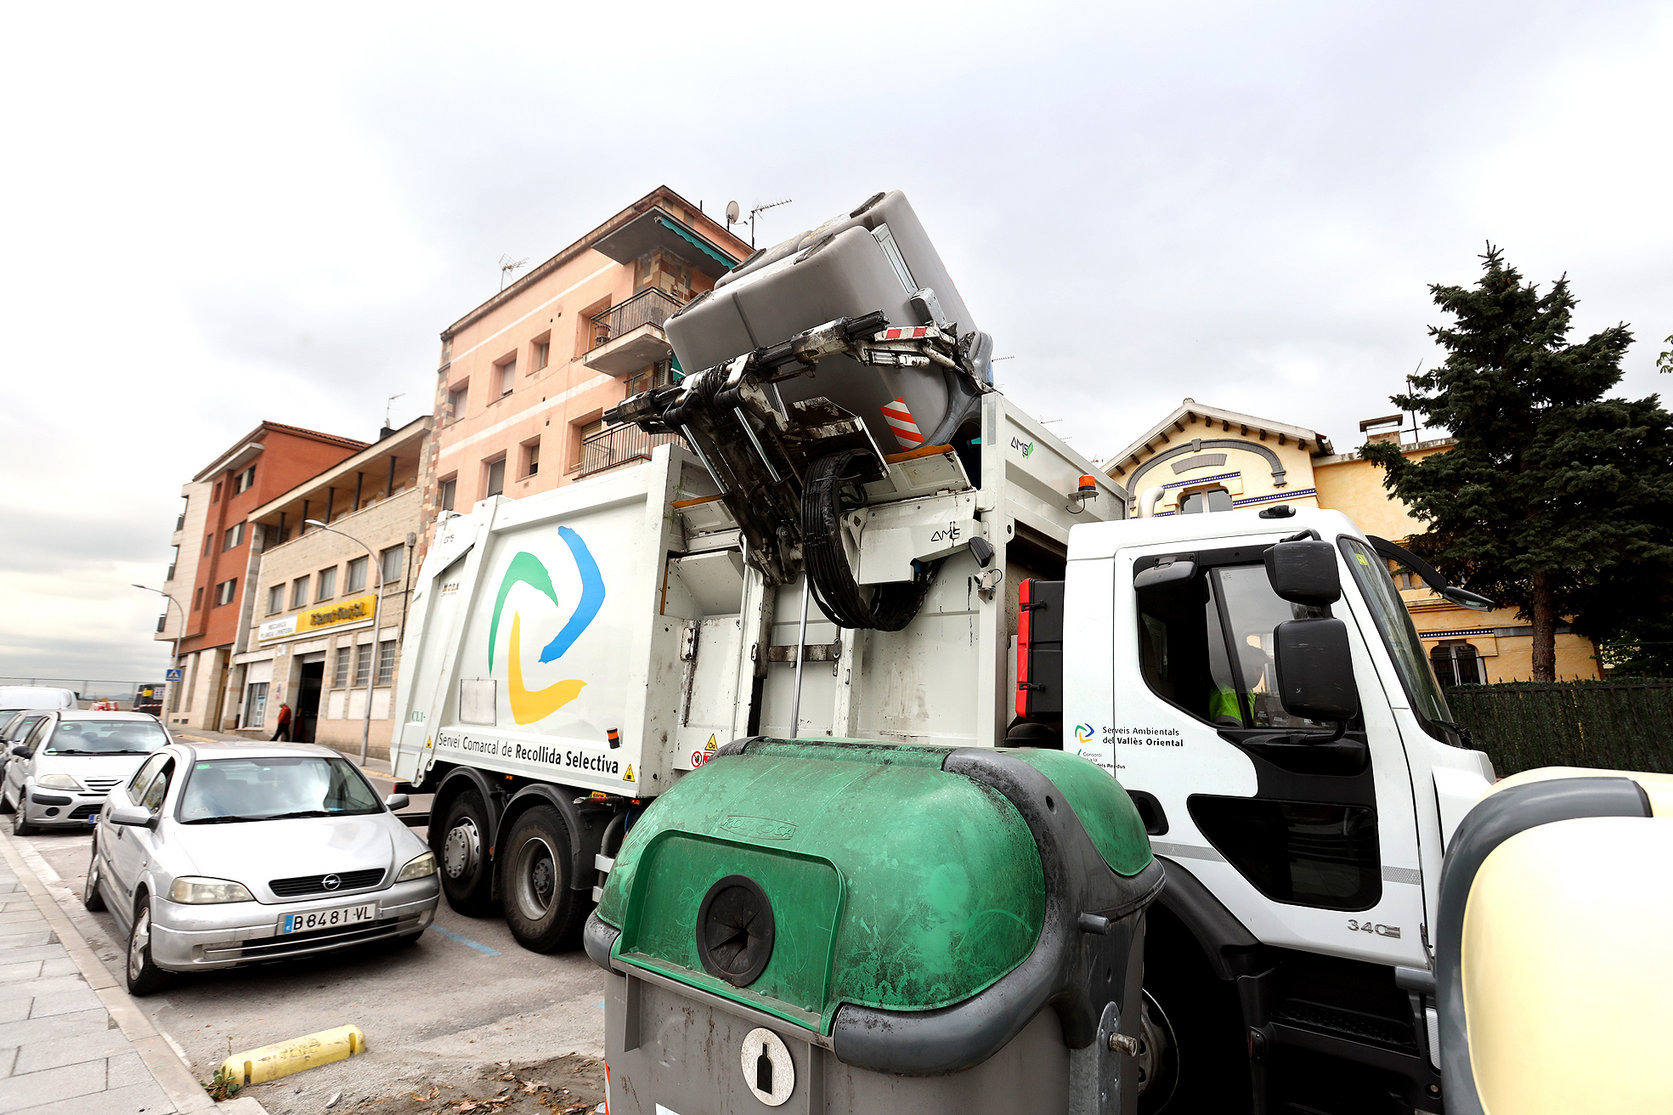 Un camió fent la recollida selectiva, un dels serveis que fa el Consorci de Residus a través de l'empresa pública Savosa